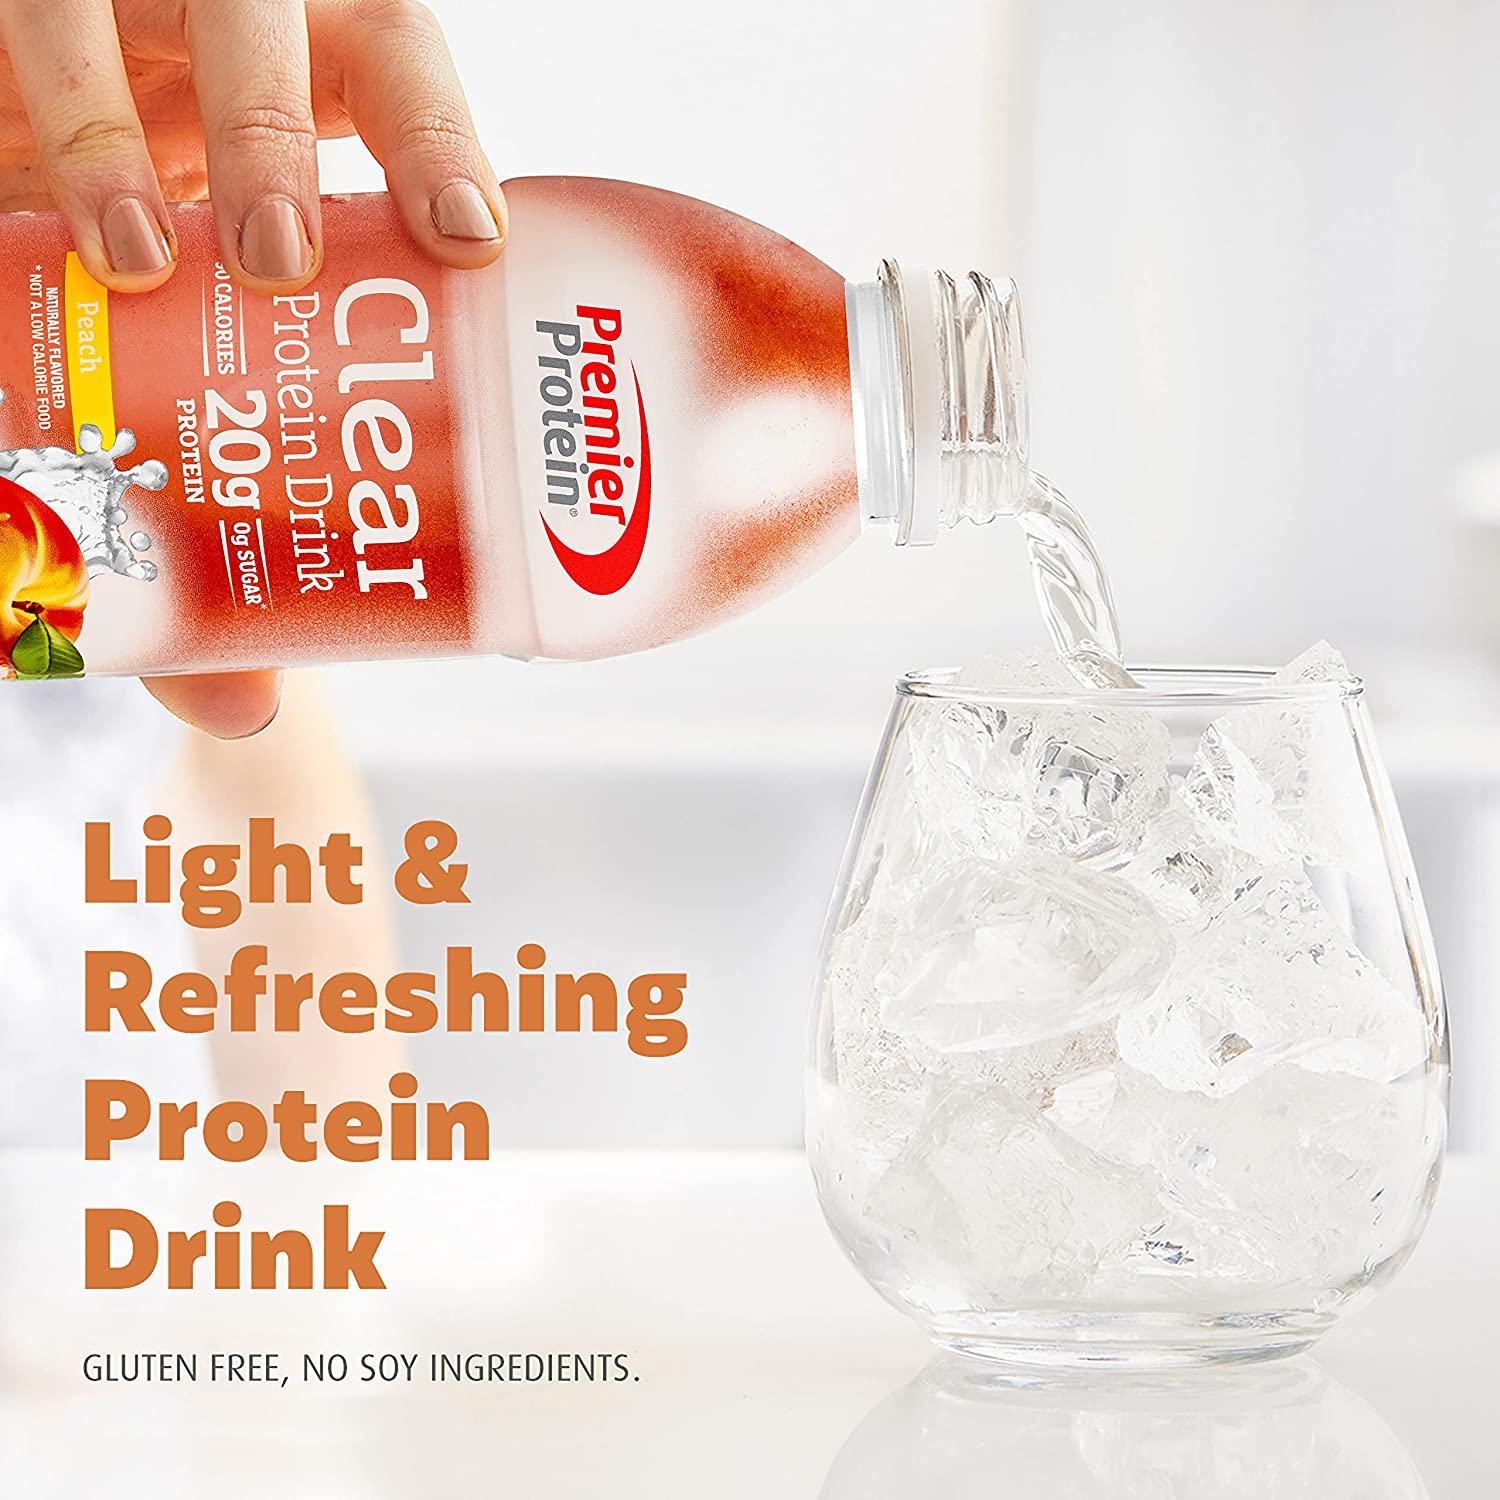 Premier Protein Premier Clear Protein Drink Peach (12/16.9 Fl Oz